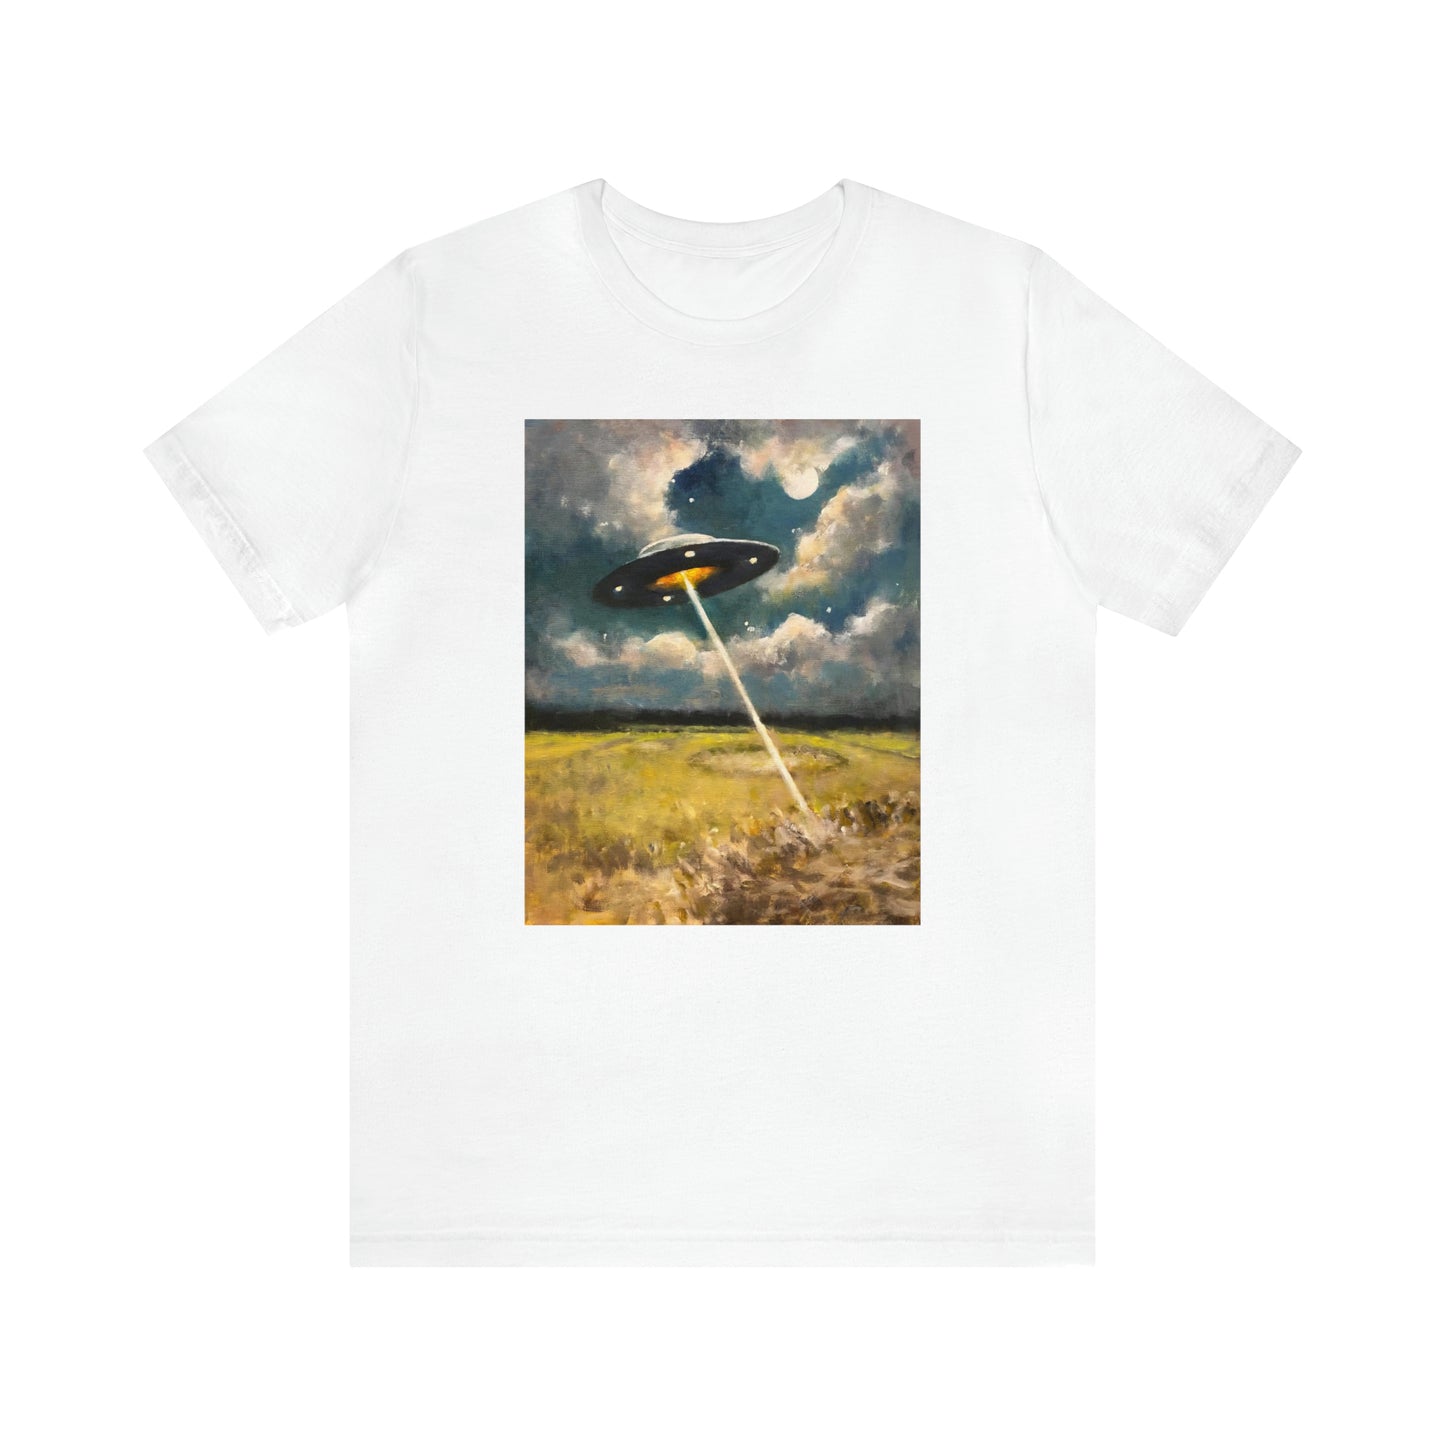 Crop Circles T-Shirt